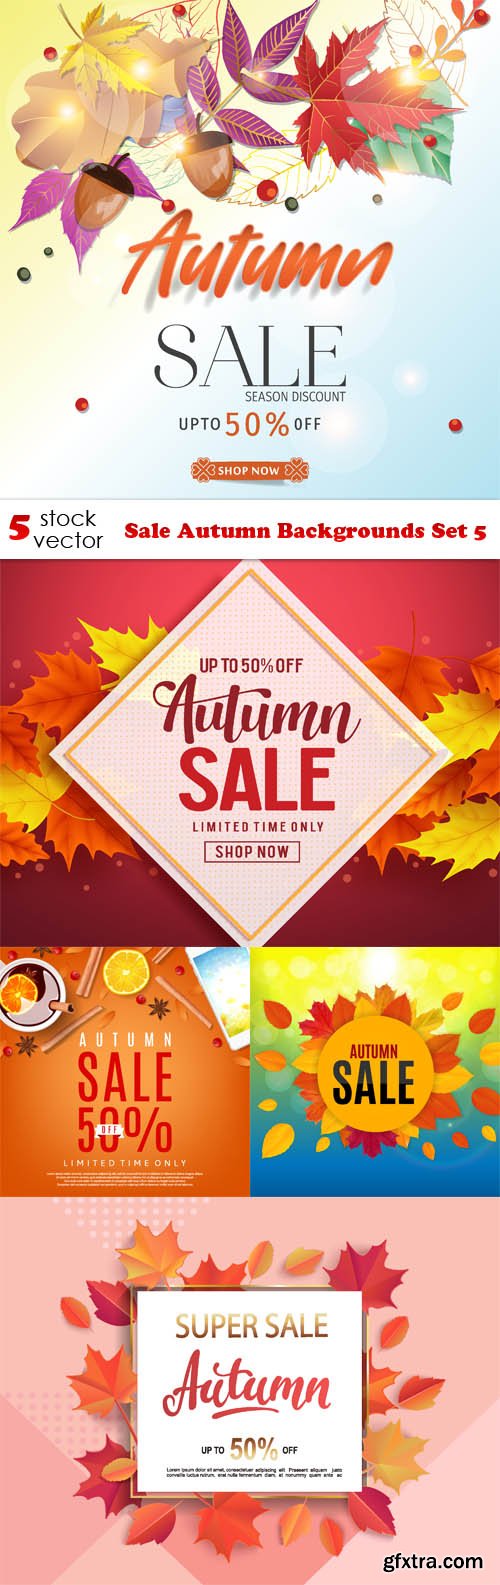 Vectors - Sale Autumn Backgrounds Set 5